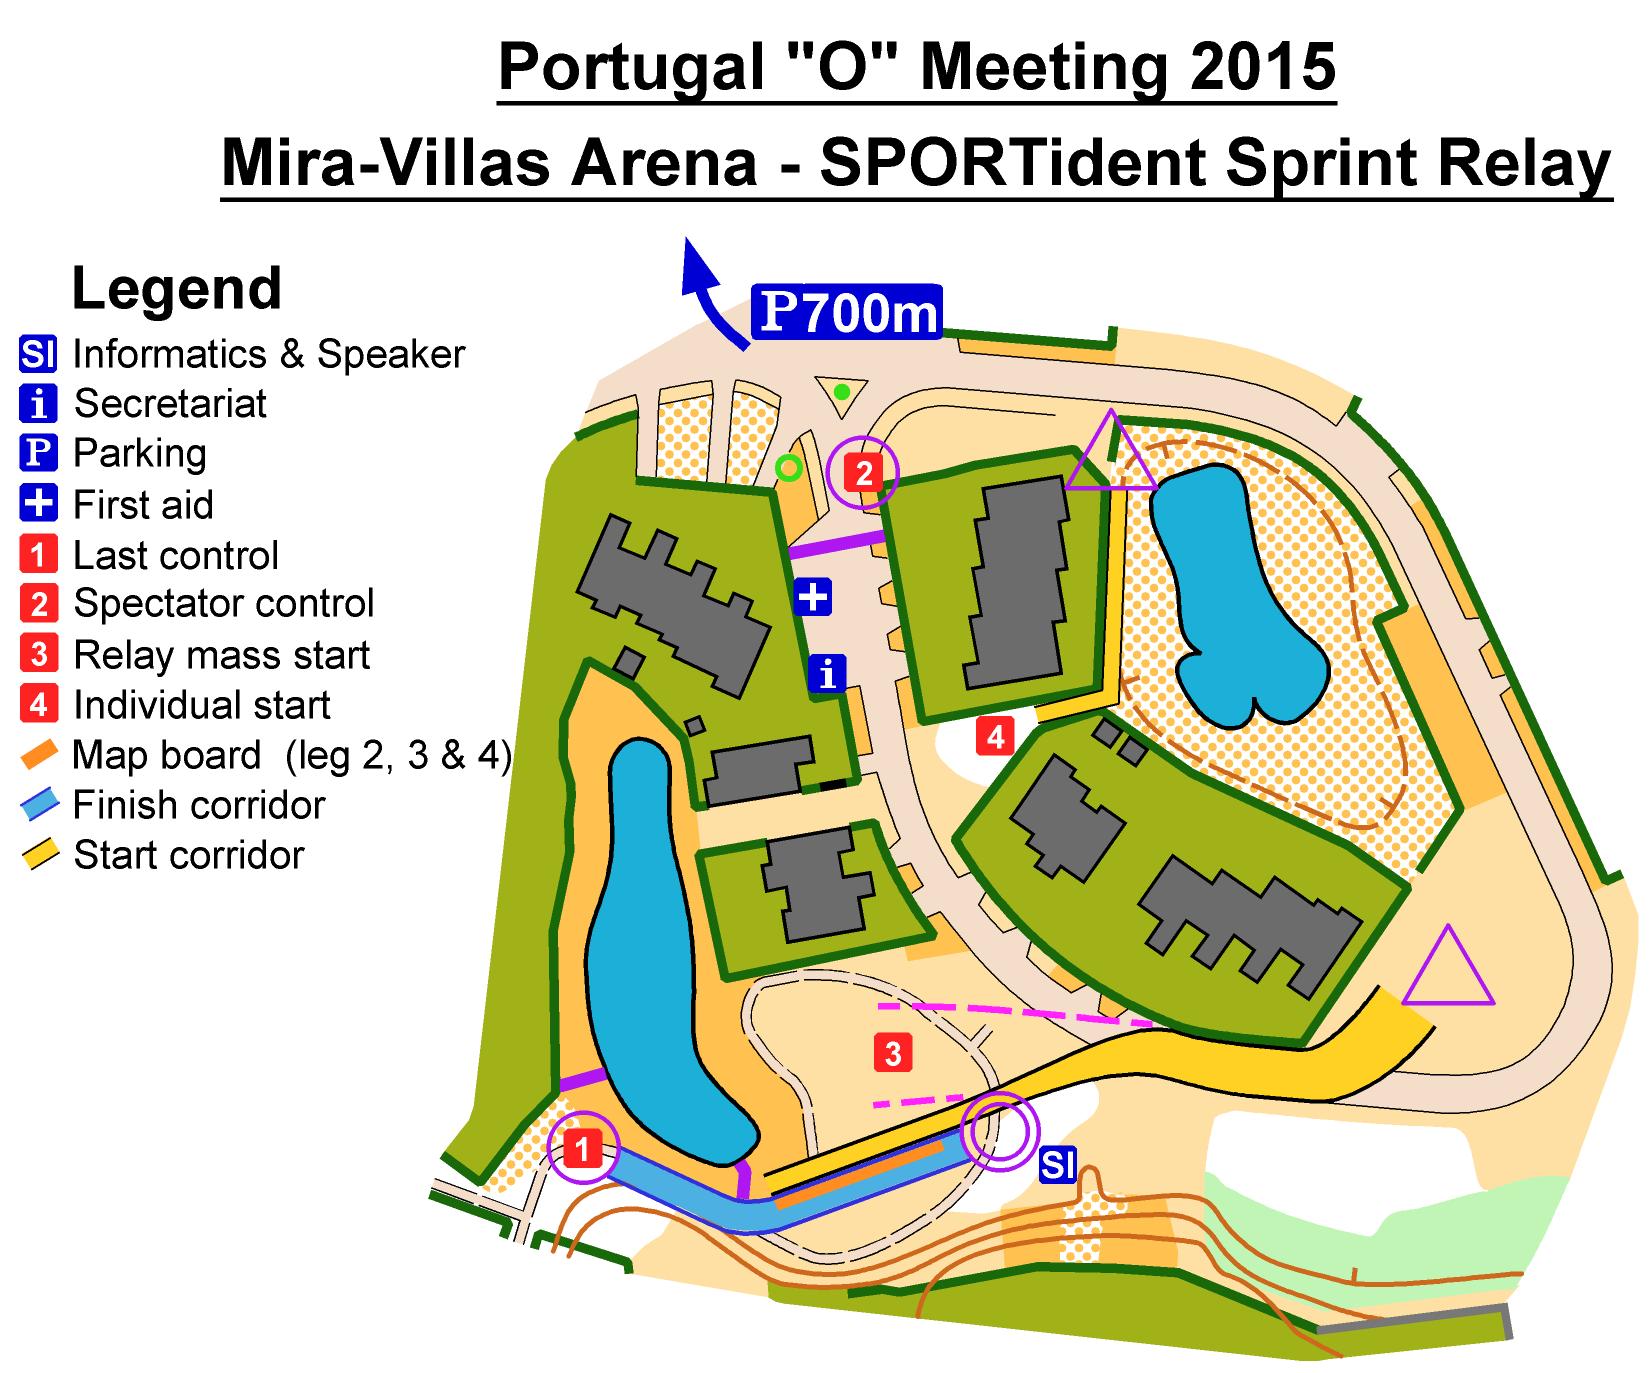 Map Scheme - Mira-Villas